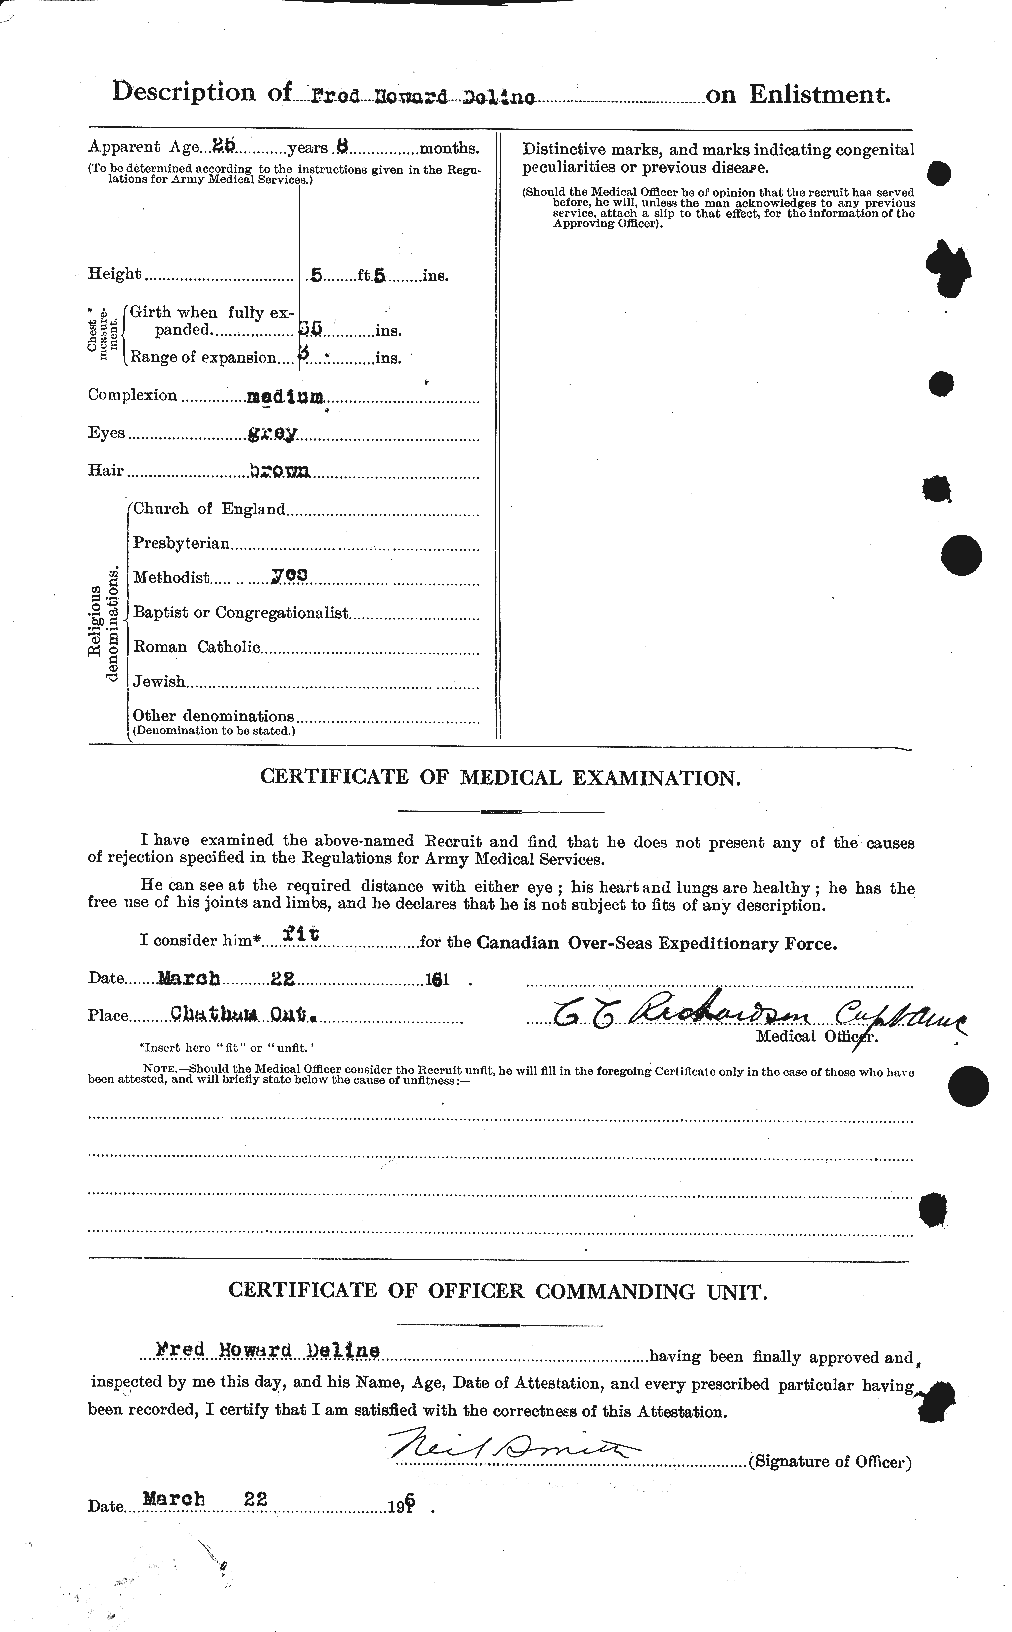 Dossiers du Personnel de la Première Guerre mondiale - CEC 286563b